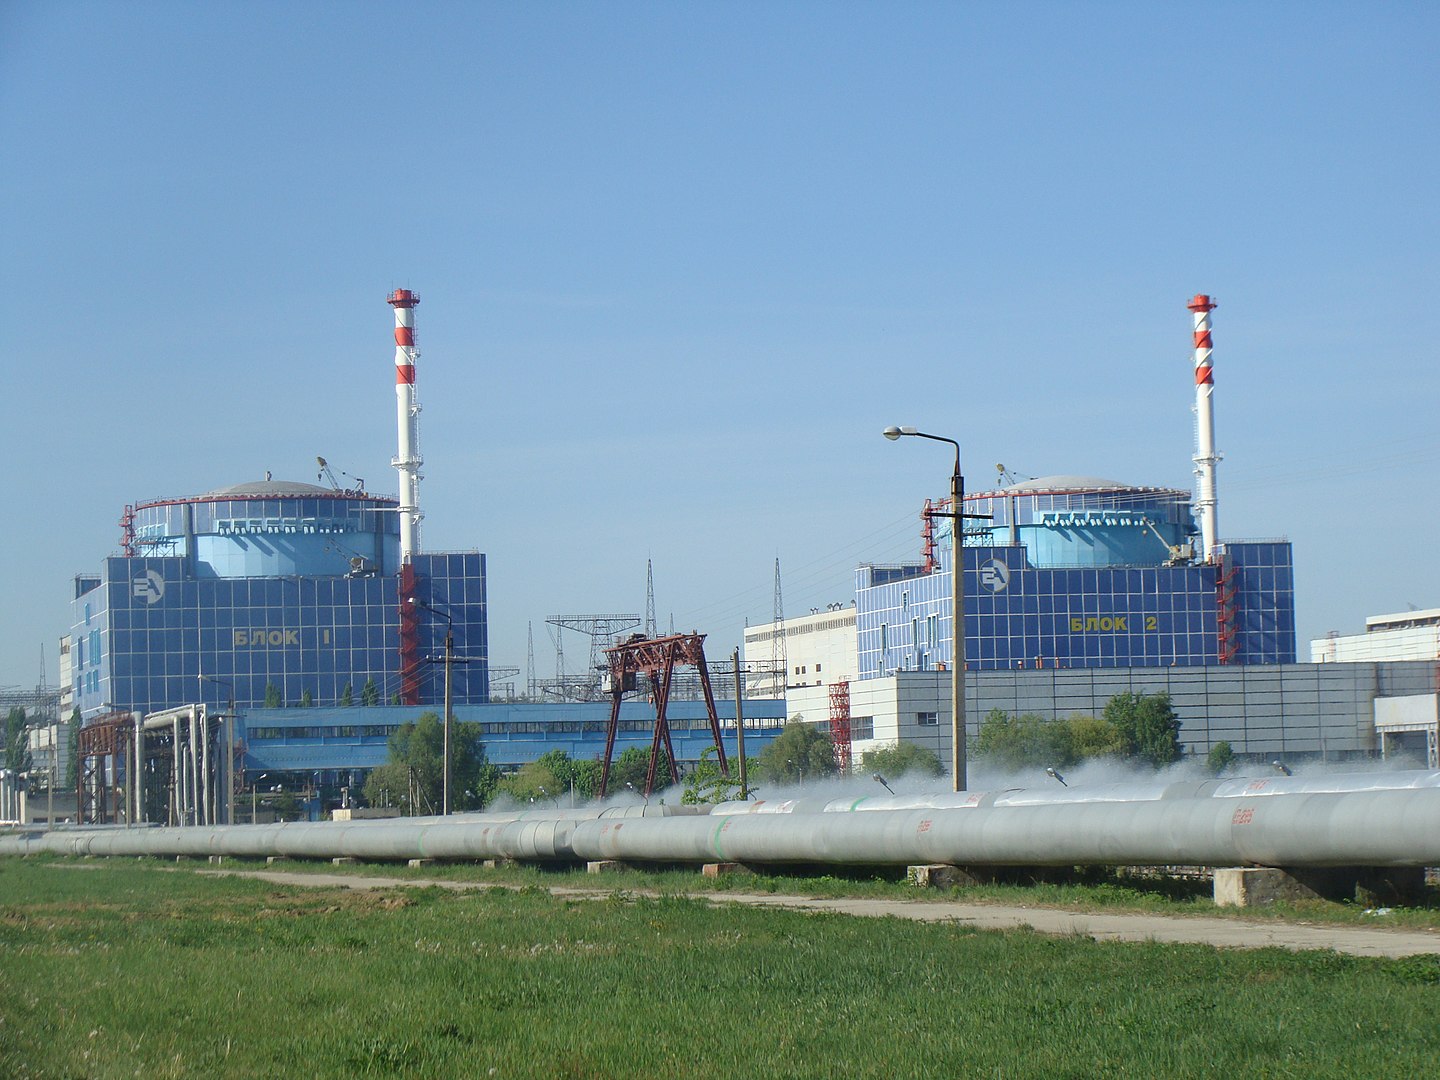 Хмельницька атомна електростанція